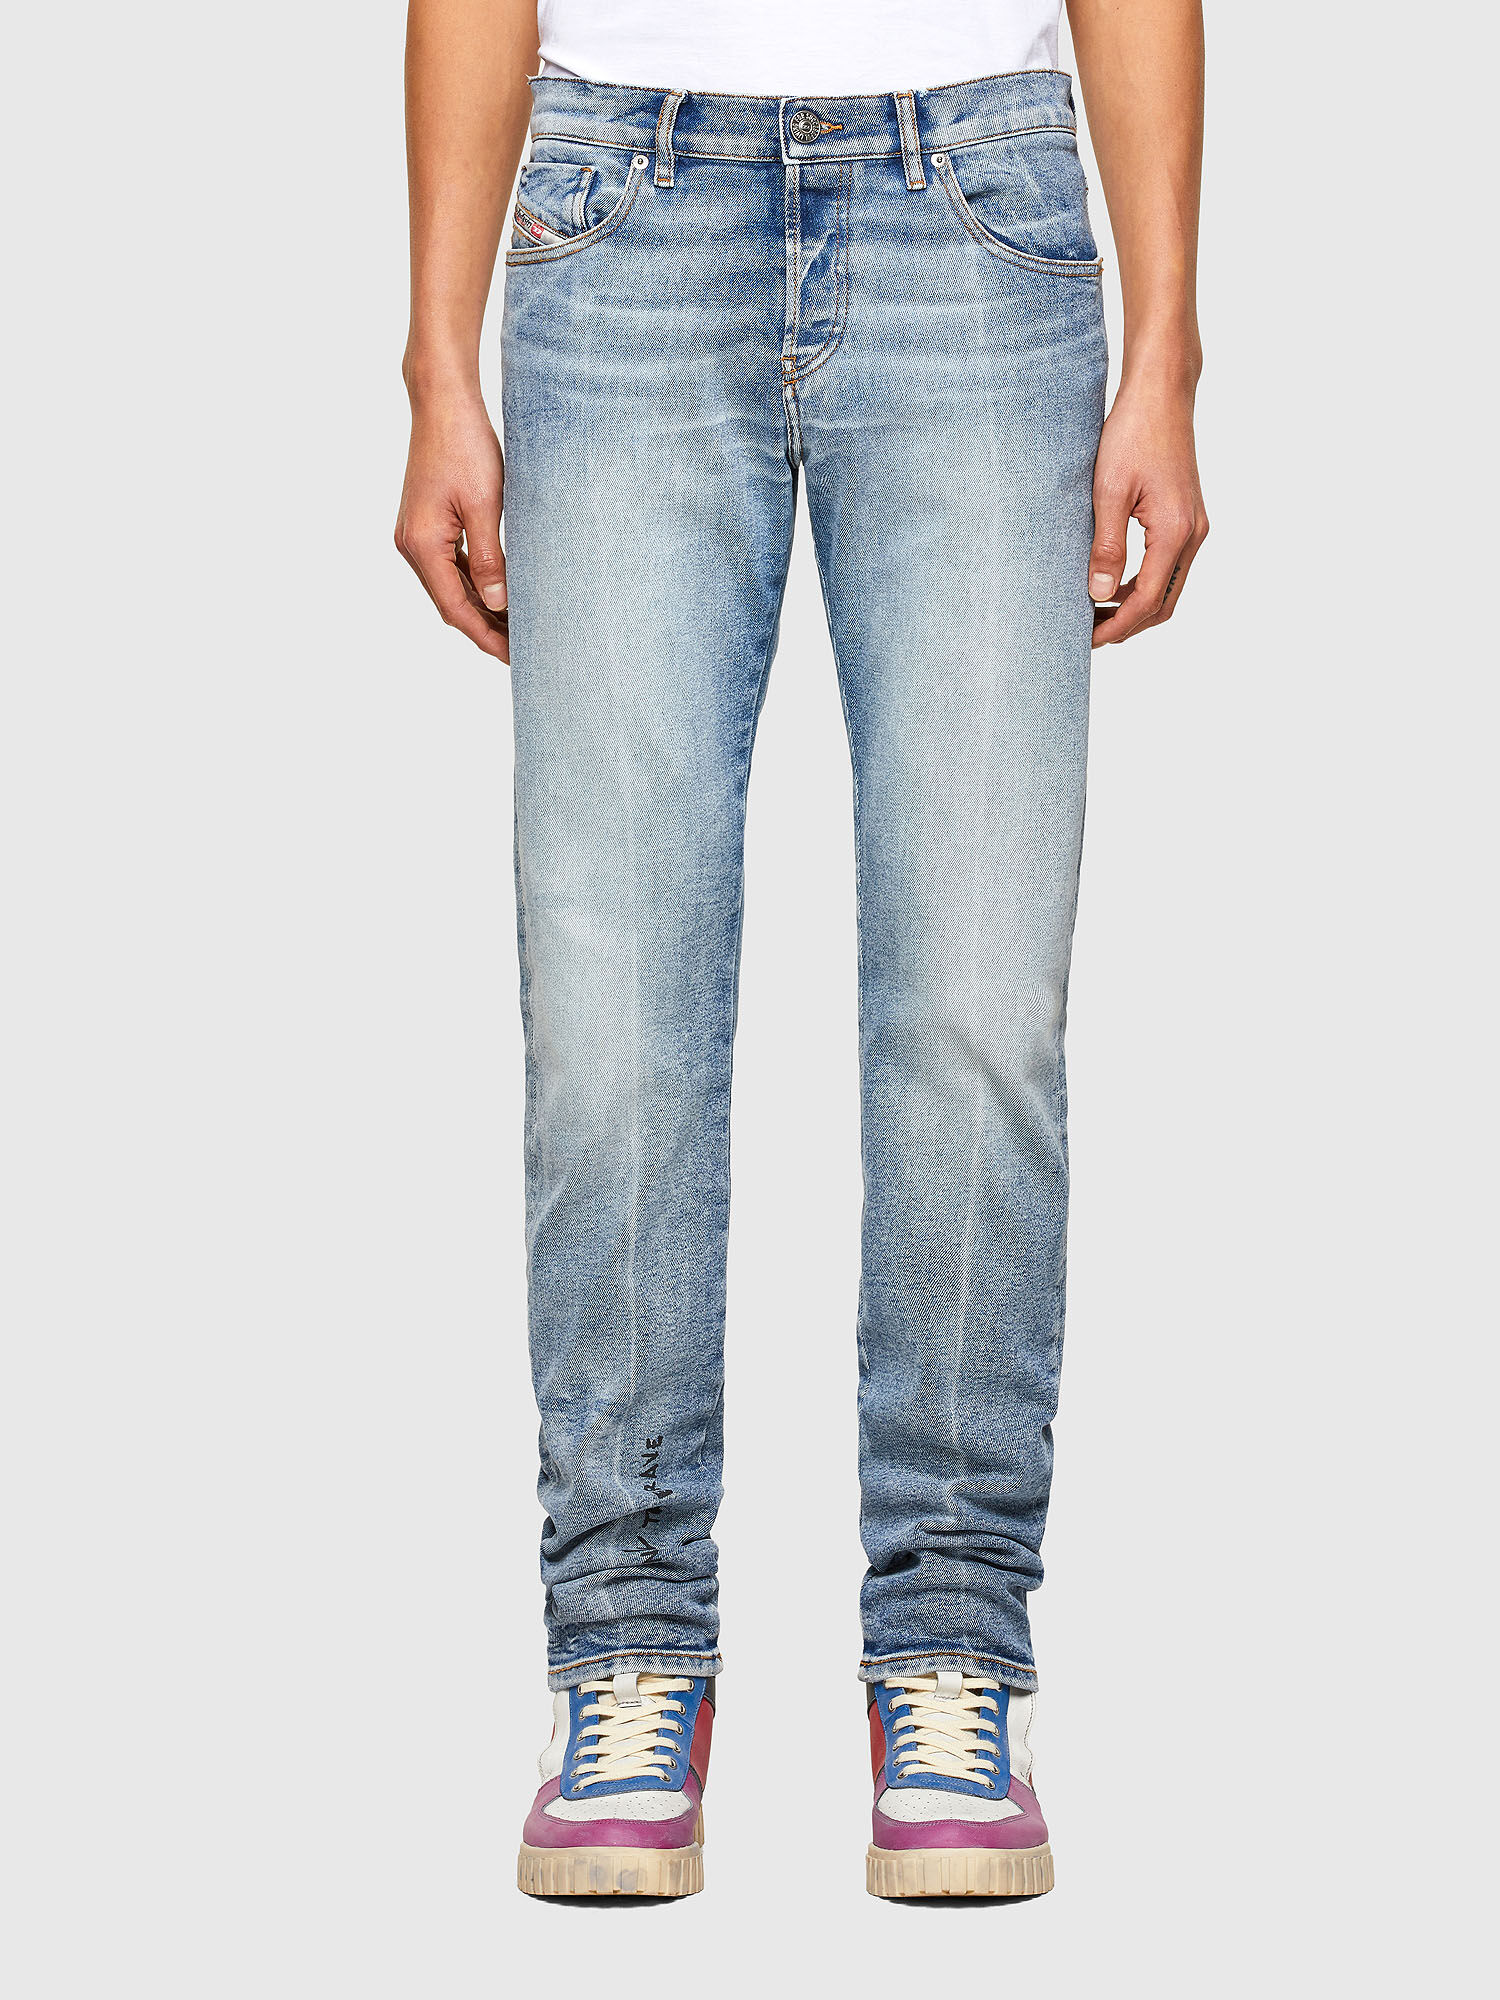 Diesel - D-Kras 009VW Slim Jeans,  - Image 2